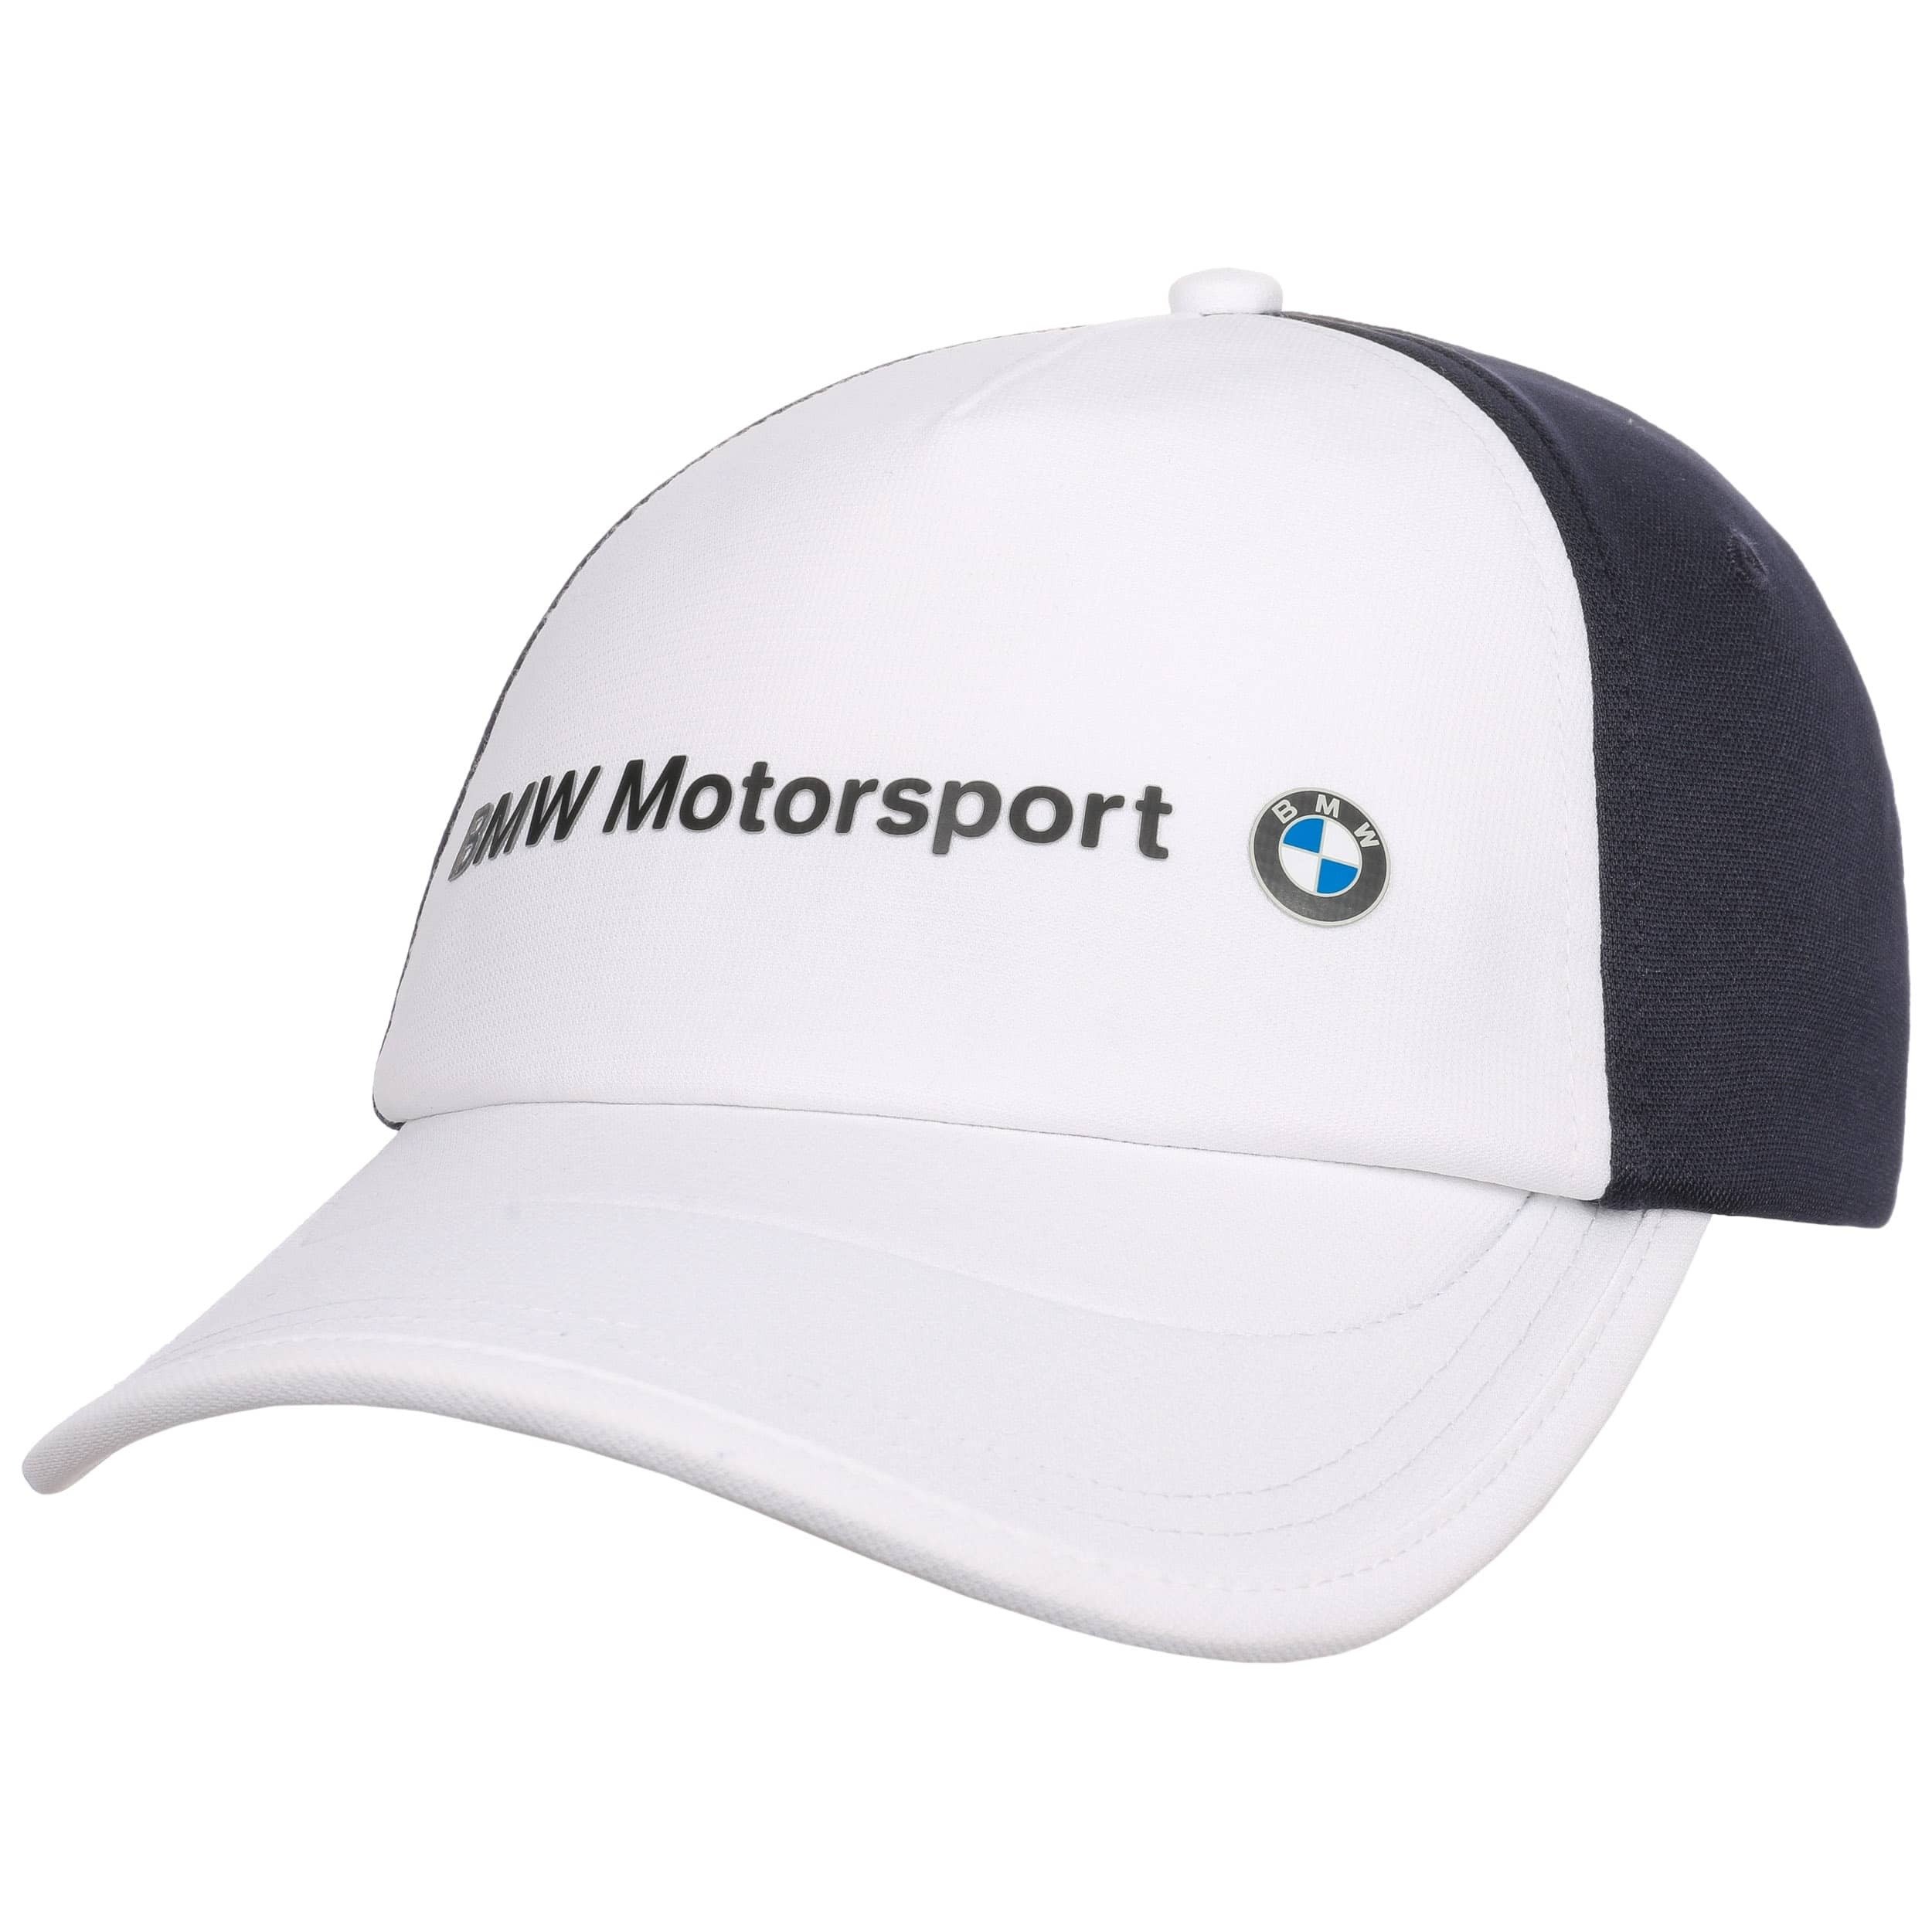 BMW Motorsport BB Cap by PUMA - 29,95 €